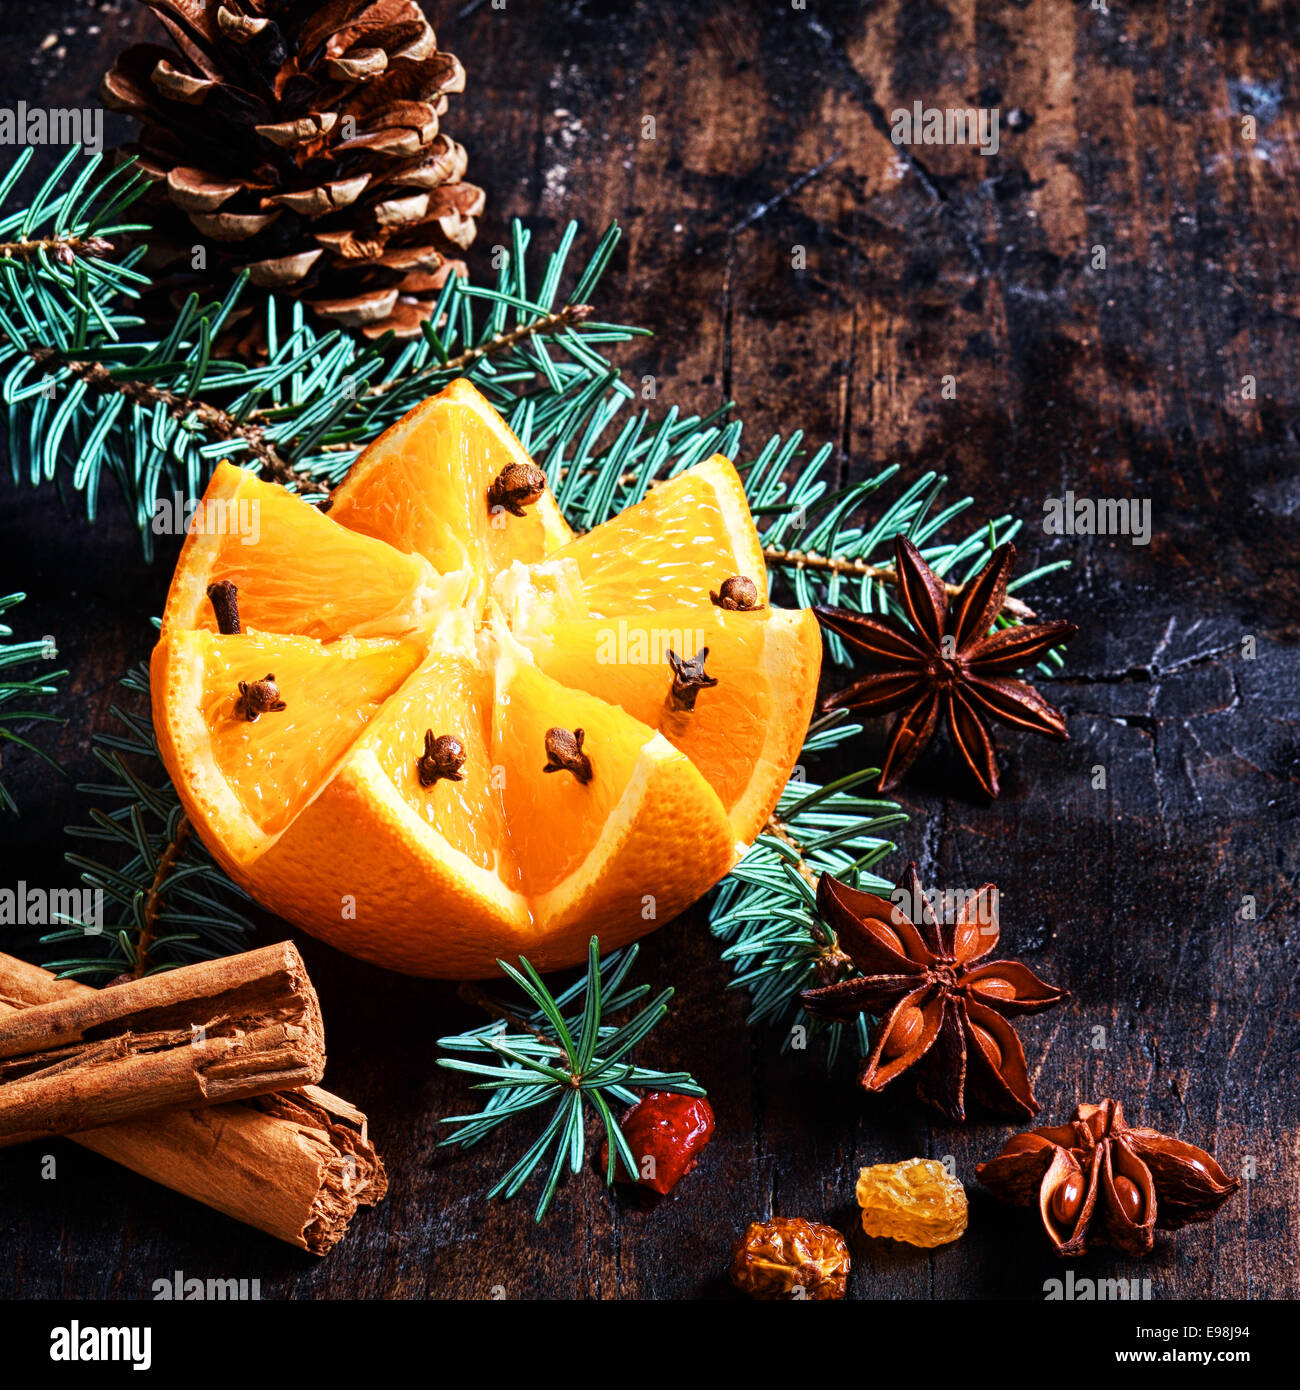 Weihnachten-Frucht und Würze-Hintergrund mit einem bunten Muster geschnitten Orange dekoriert mit Nelken eingebettet auf Kiefer Laub mit einem Kegel, Zimt, Sternanis und Muttern auf einer rustikalen Kulisse im quadratischen format Stockfoto